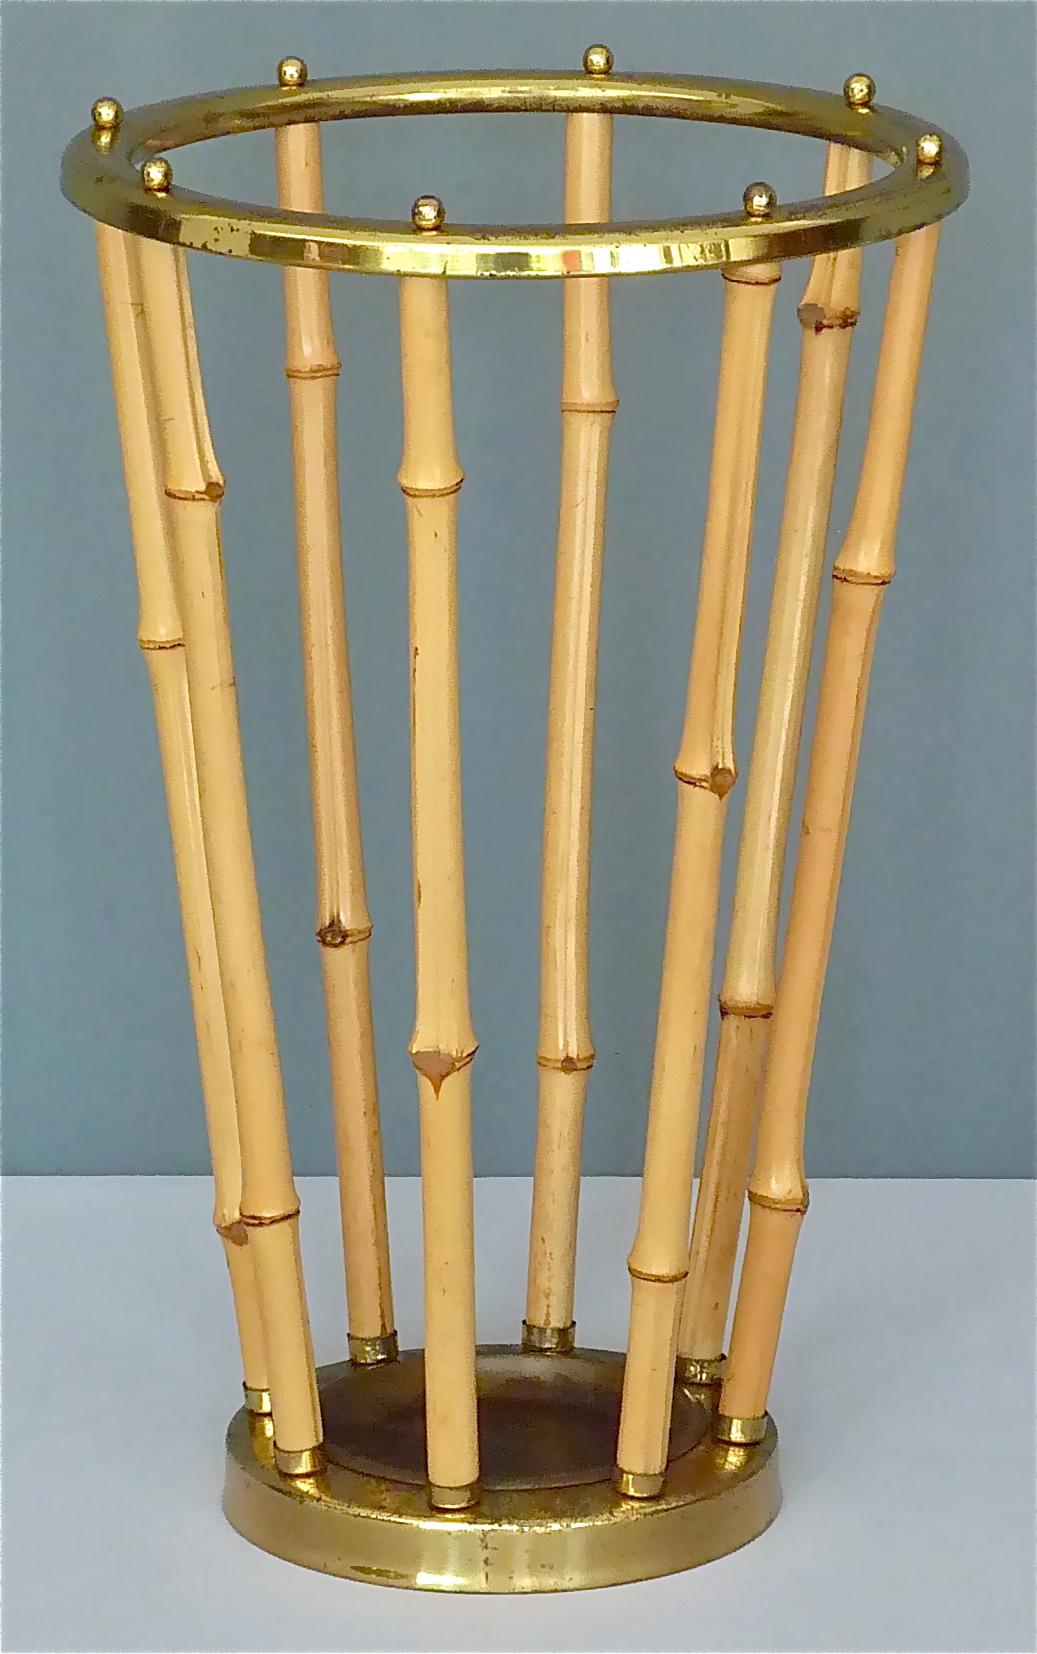 Magnifique porte-parapluies autrichien du milieu des années 1950, qui appartient probablement à l'un des merveilleux designs d'Auböck, Hagenauer, Josef Frank pour Haus & Garten ou Kalmar. Il est fabriqué en bambou et en laiton patiné avec de jolis